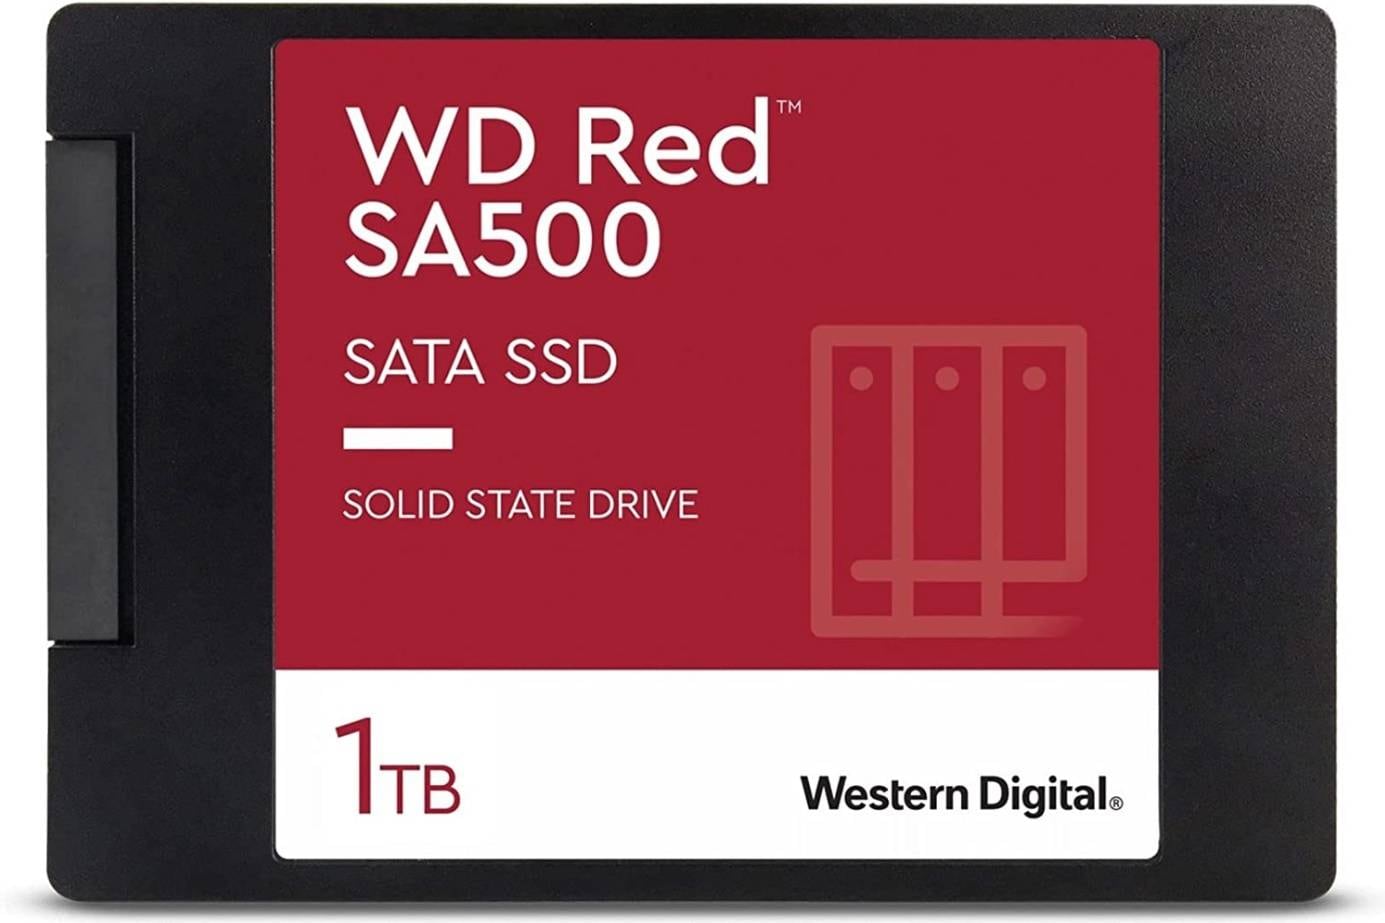 wd red sa500 nas hard drive